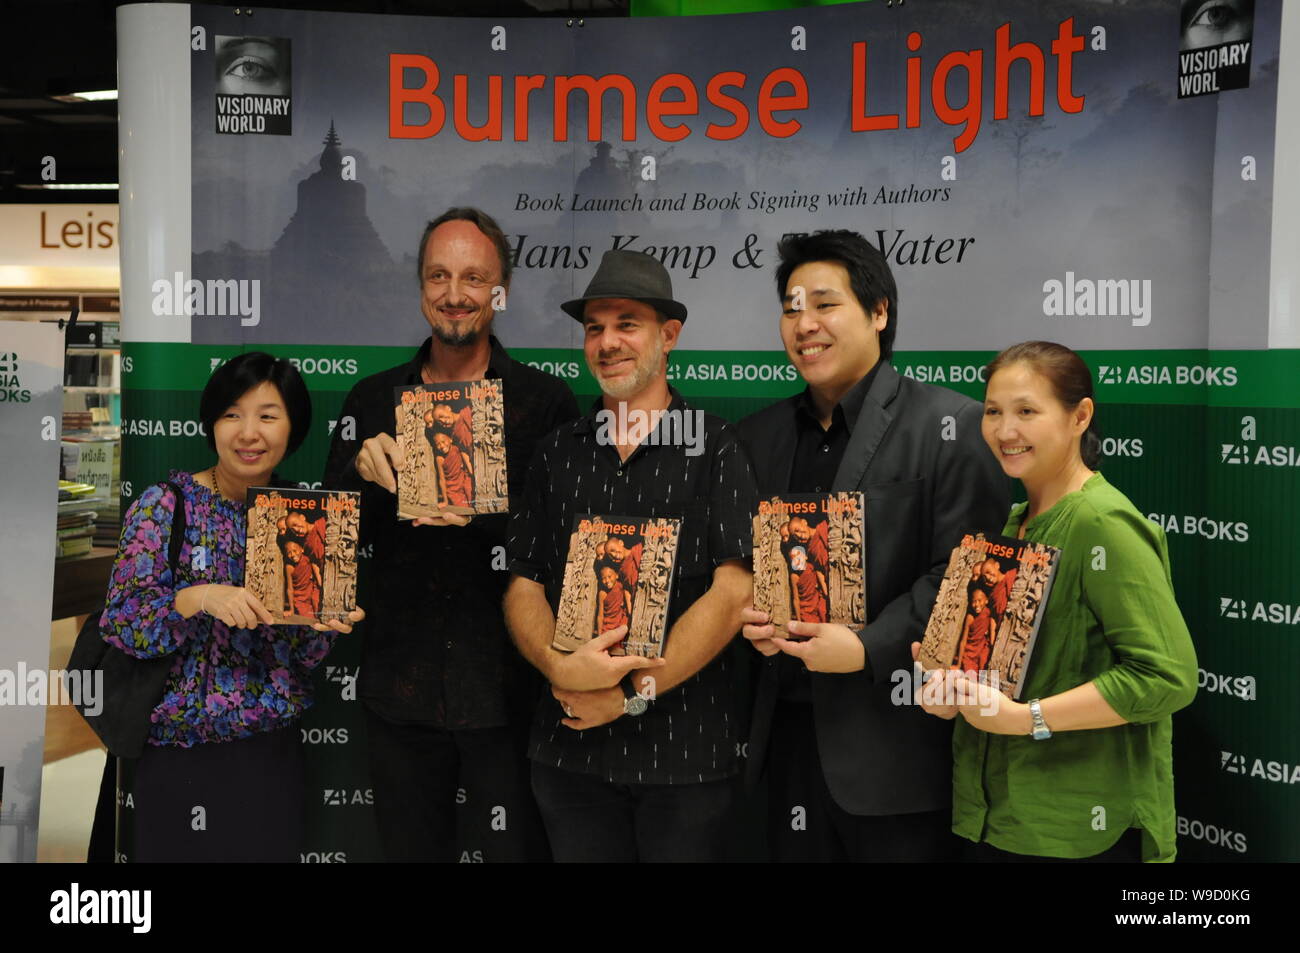 Fotograf Hans Kemp & reisen Schriftsteller Tom Vater an der birmanischen Light" Buchvorstellung in Asien Bücher. Bangkok, Thailand: Kraig Lieb Stockfoto